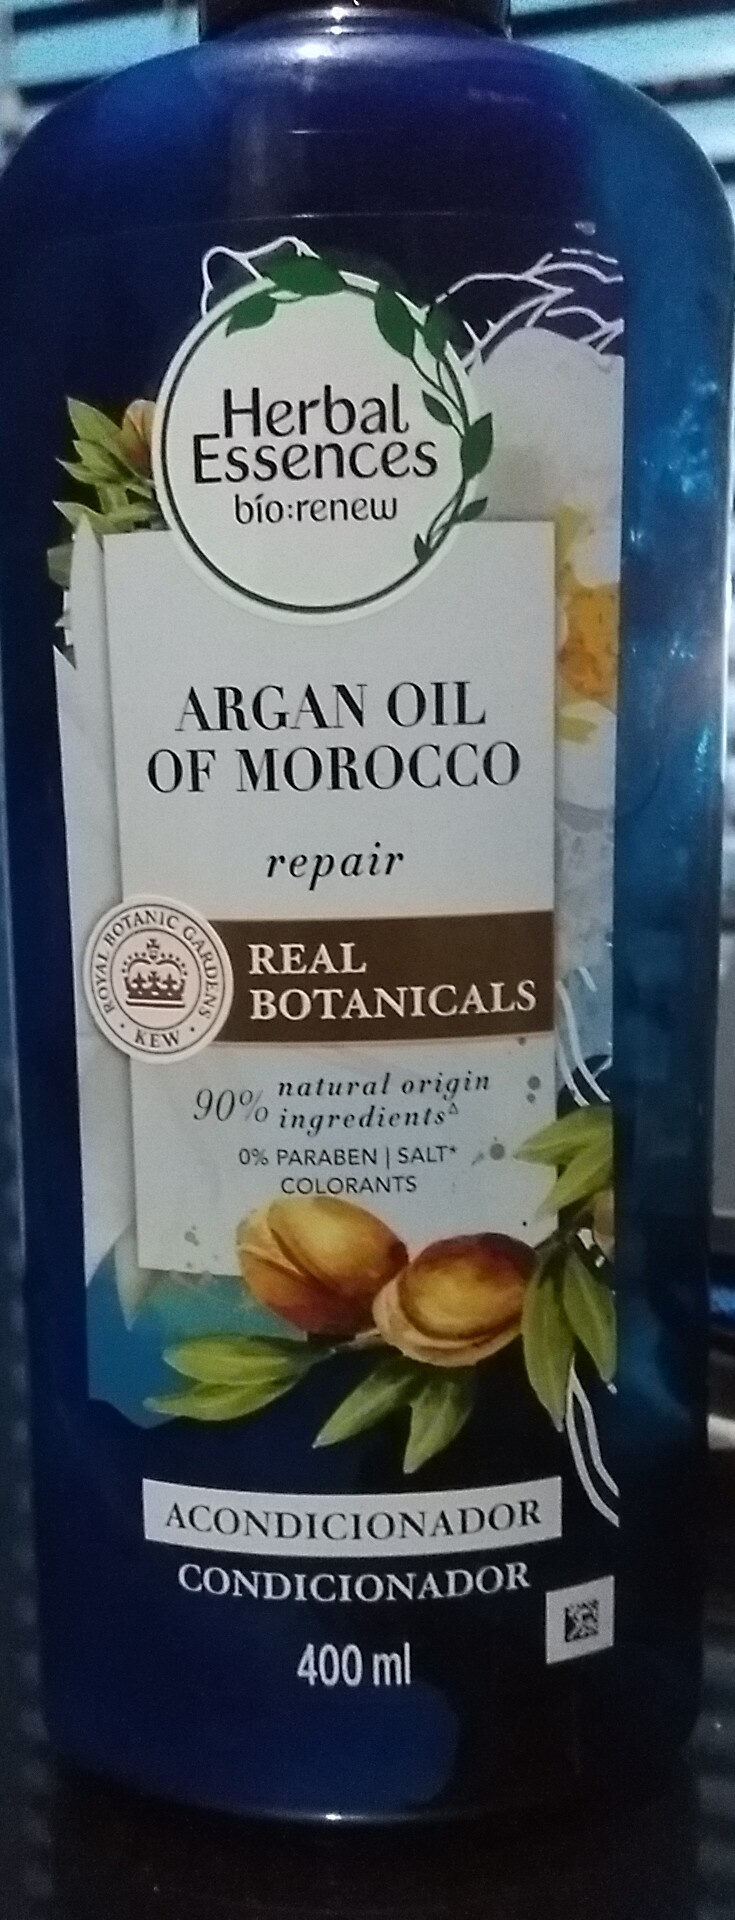 Argan Oil of Morocco Acondicionador - Tuote - es